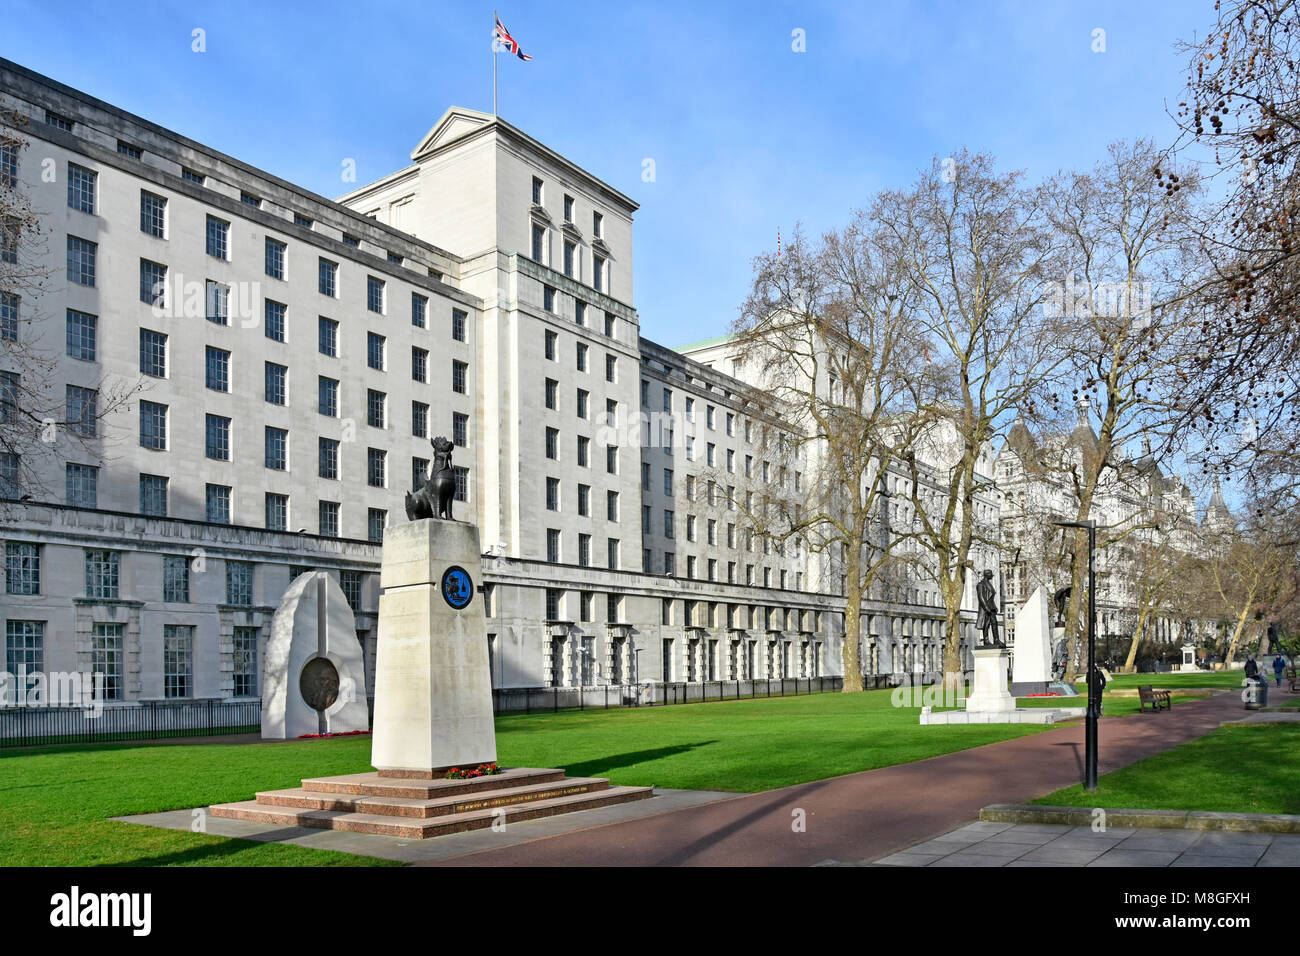 Vista invernal de las oficinas gubernamentales del Ministerio de Defensa MOD principal edificio Victoria Embankment Gardens incluidos varios monumentos de guerra, Londres, Gran Bretaña. Foto de stock